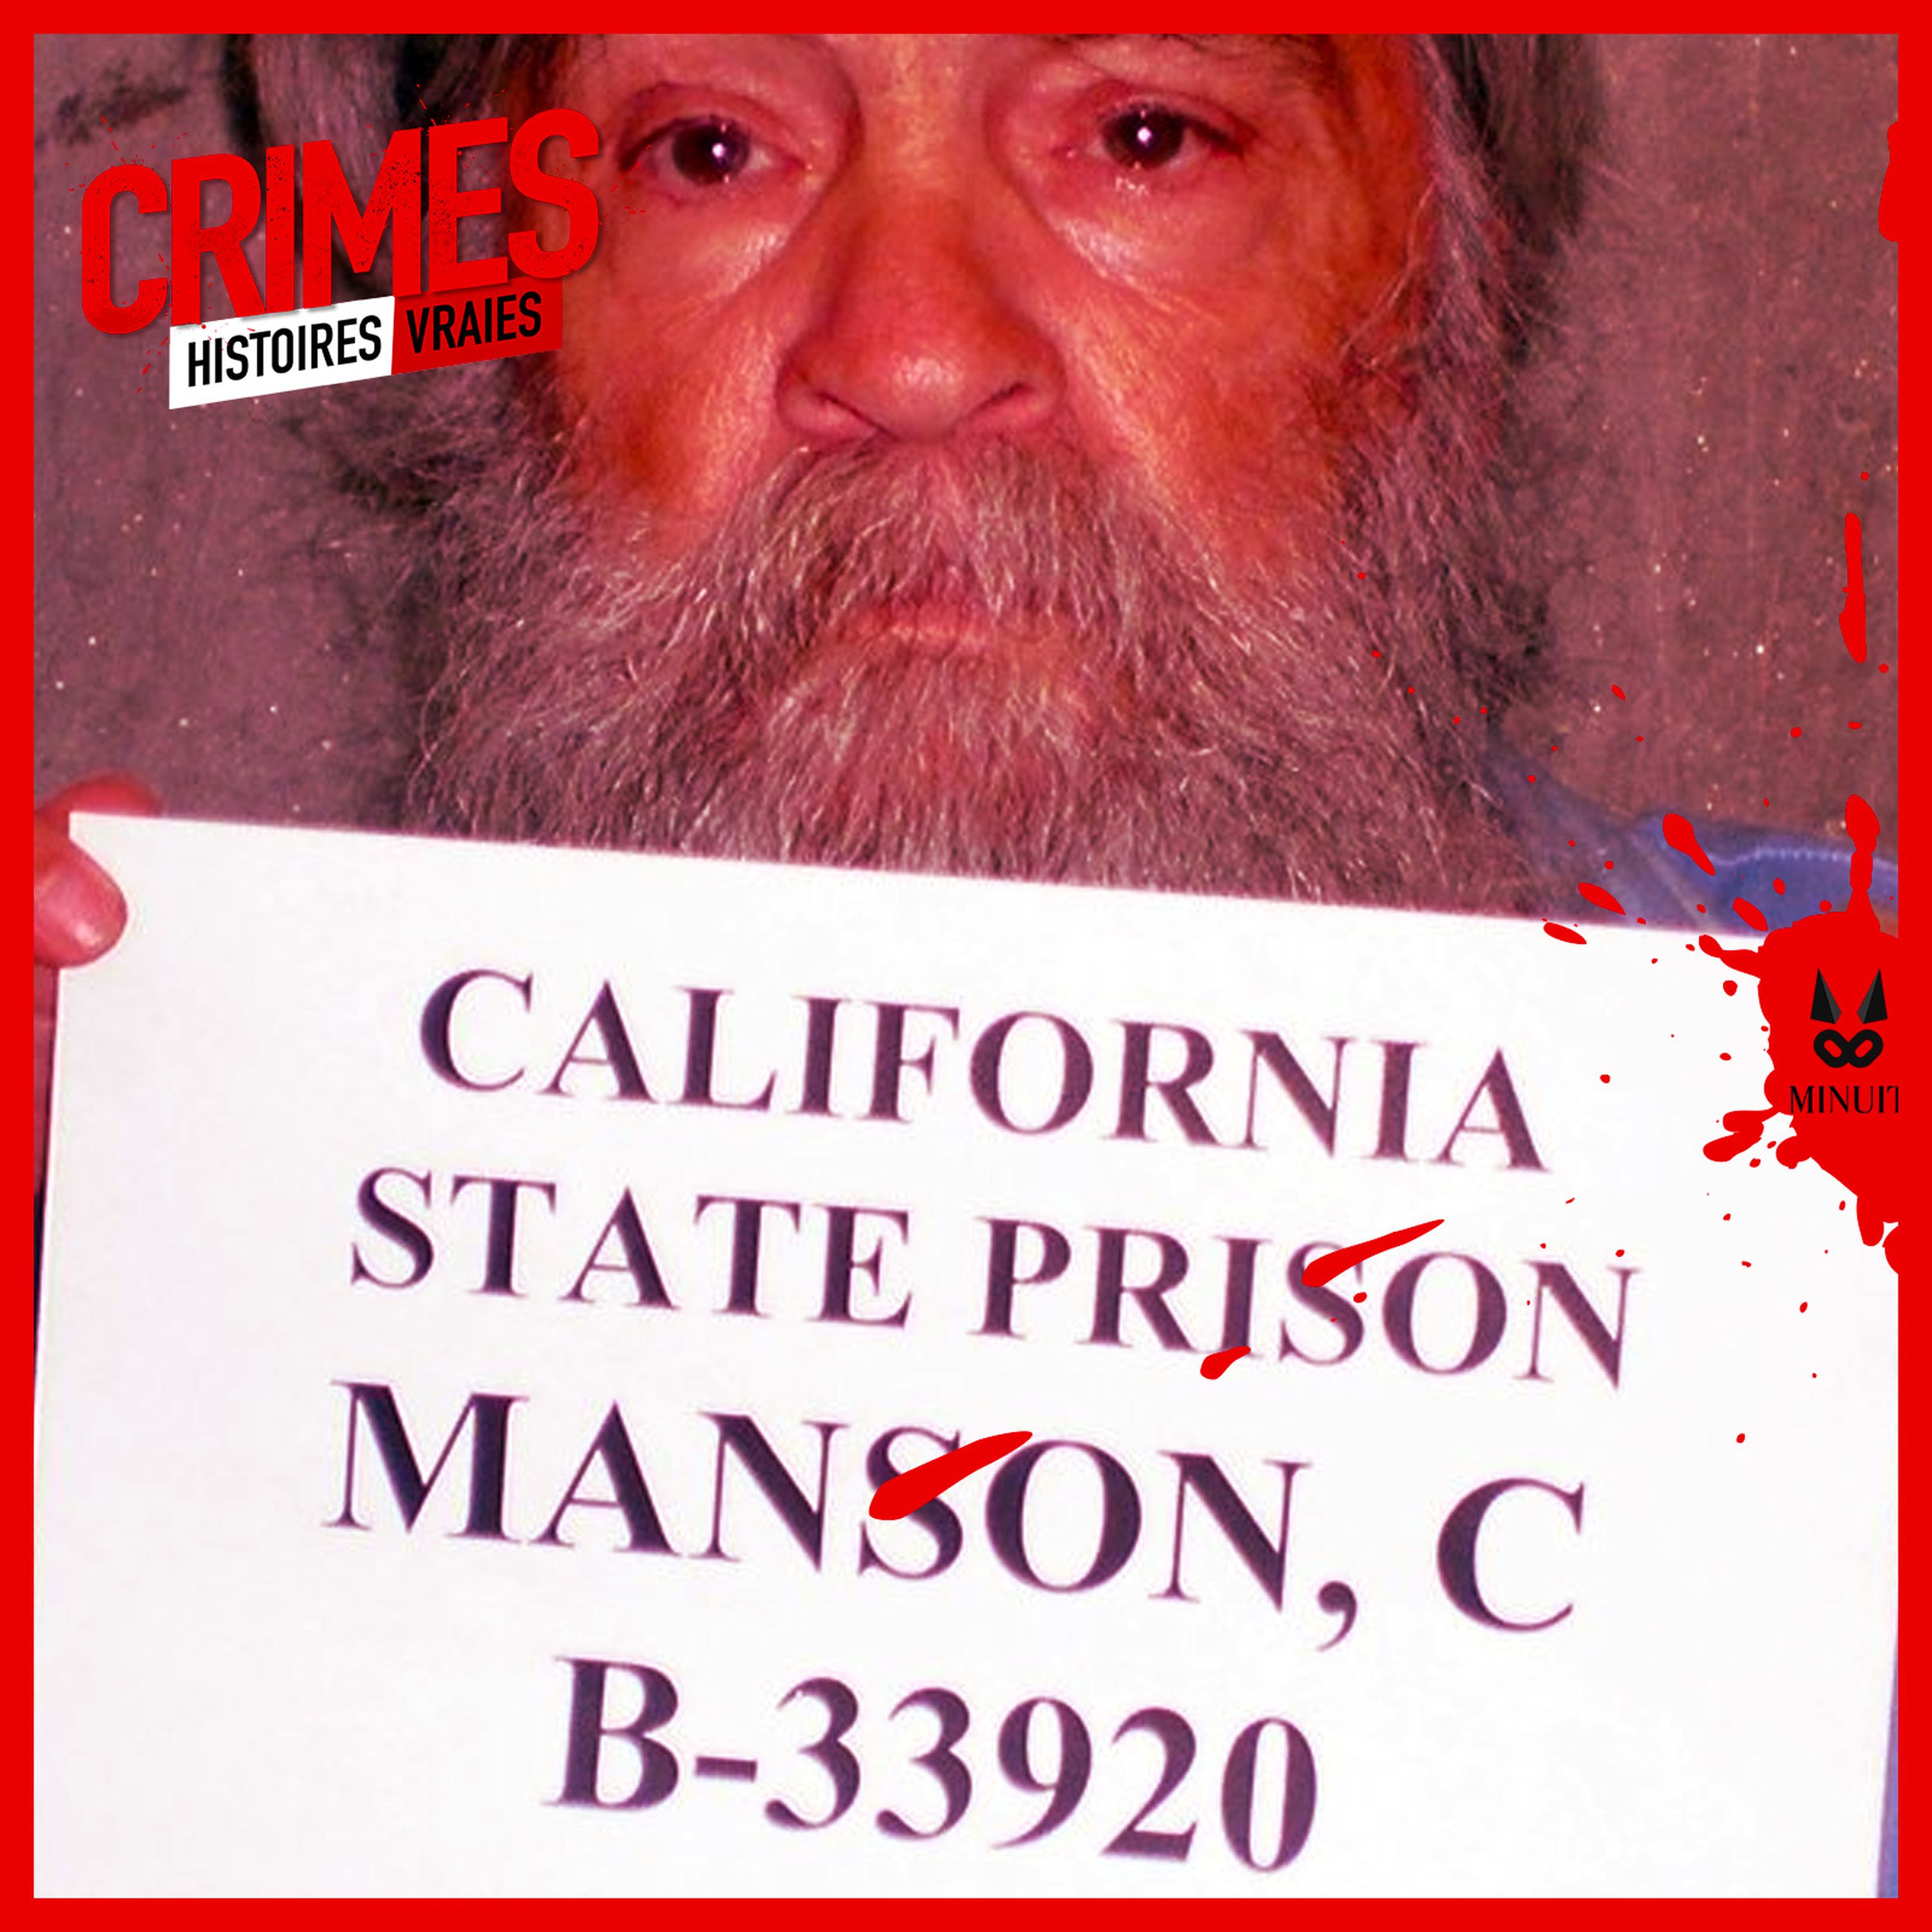 Charles Manson et la Manson Family • Episode 4 sur 6